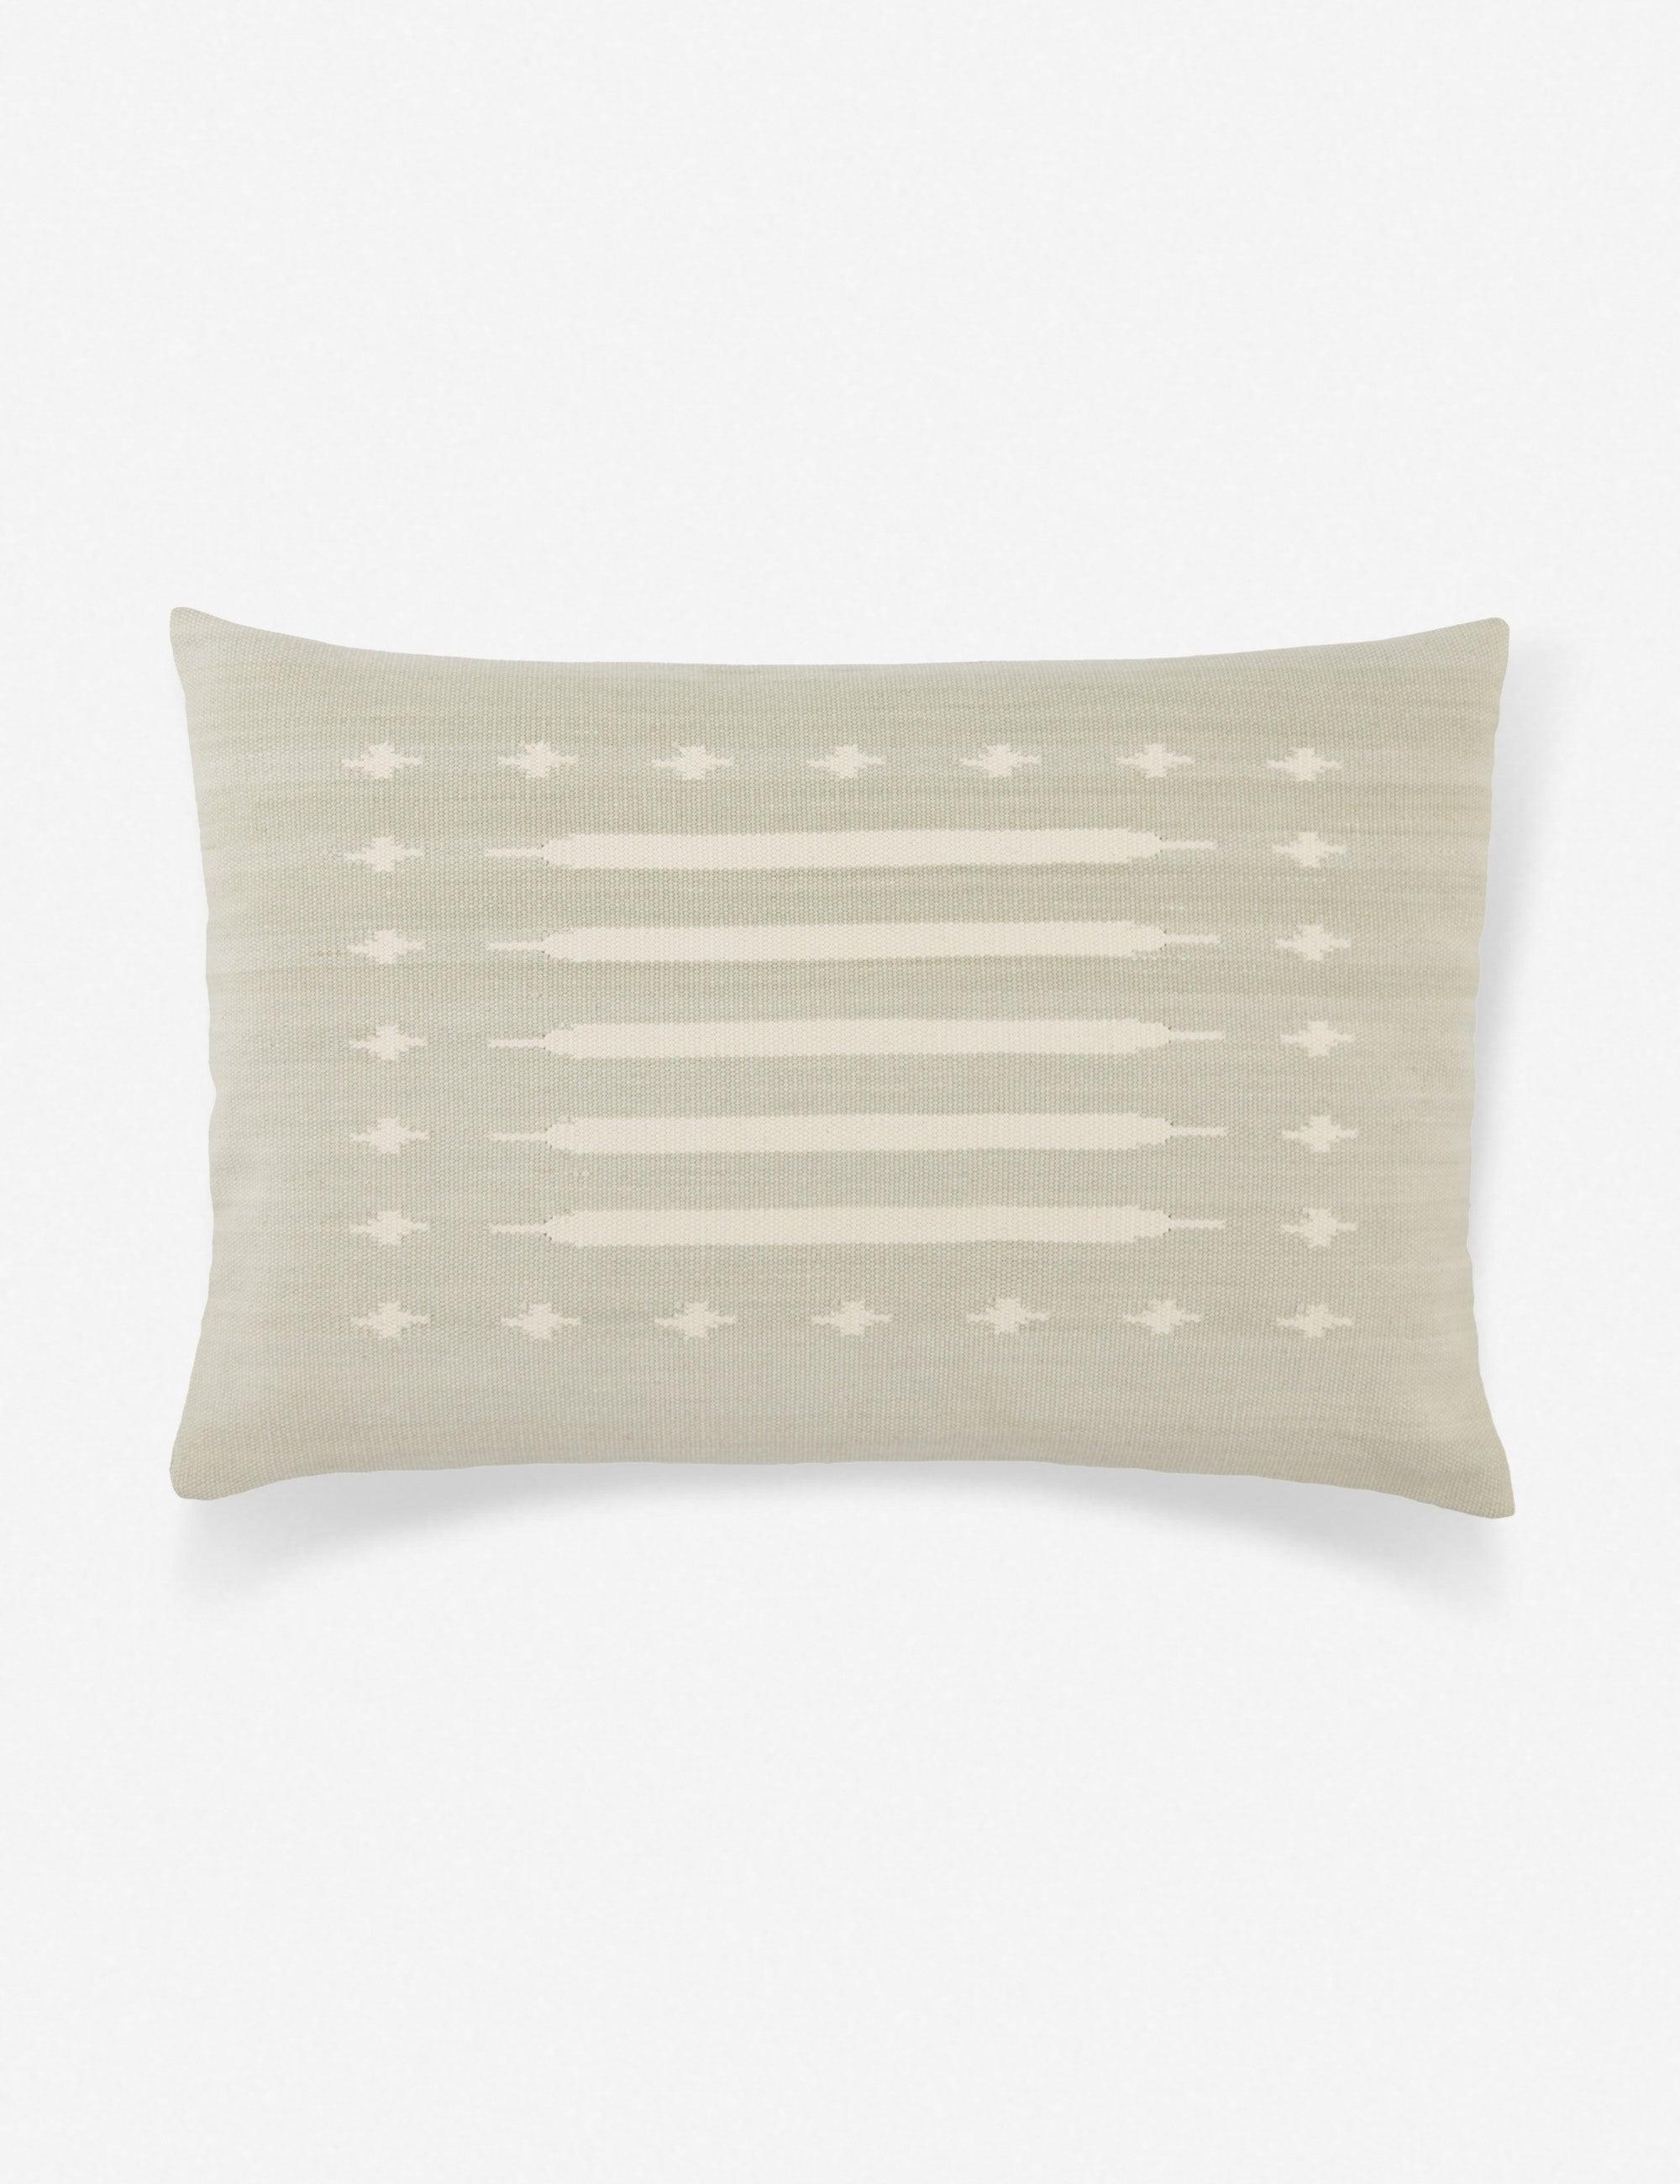 Lina Abstract Linear Light Gray and Cream Lumbar Pillow